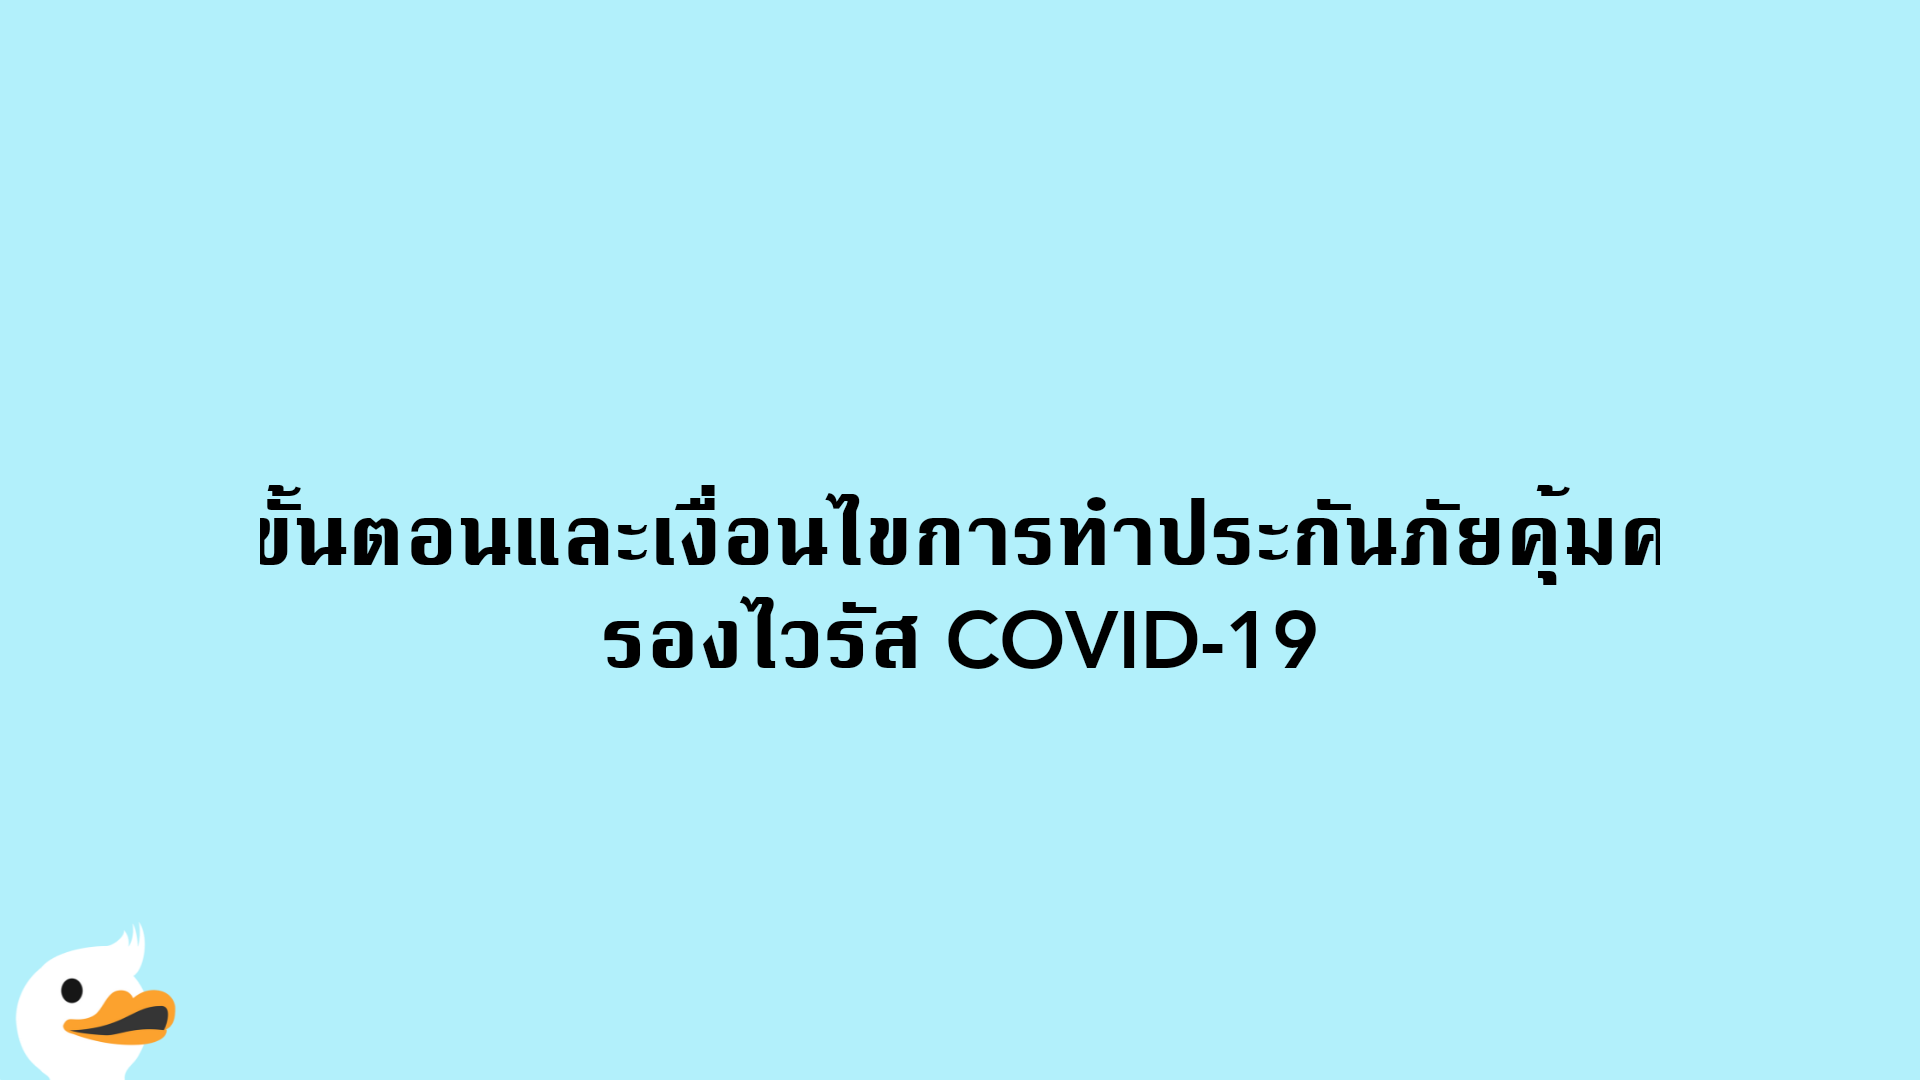 ขั้นตอนและเงื่อนไขการทำประกันภัยคุ้มครองไวรัส COVID-19